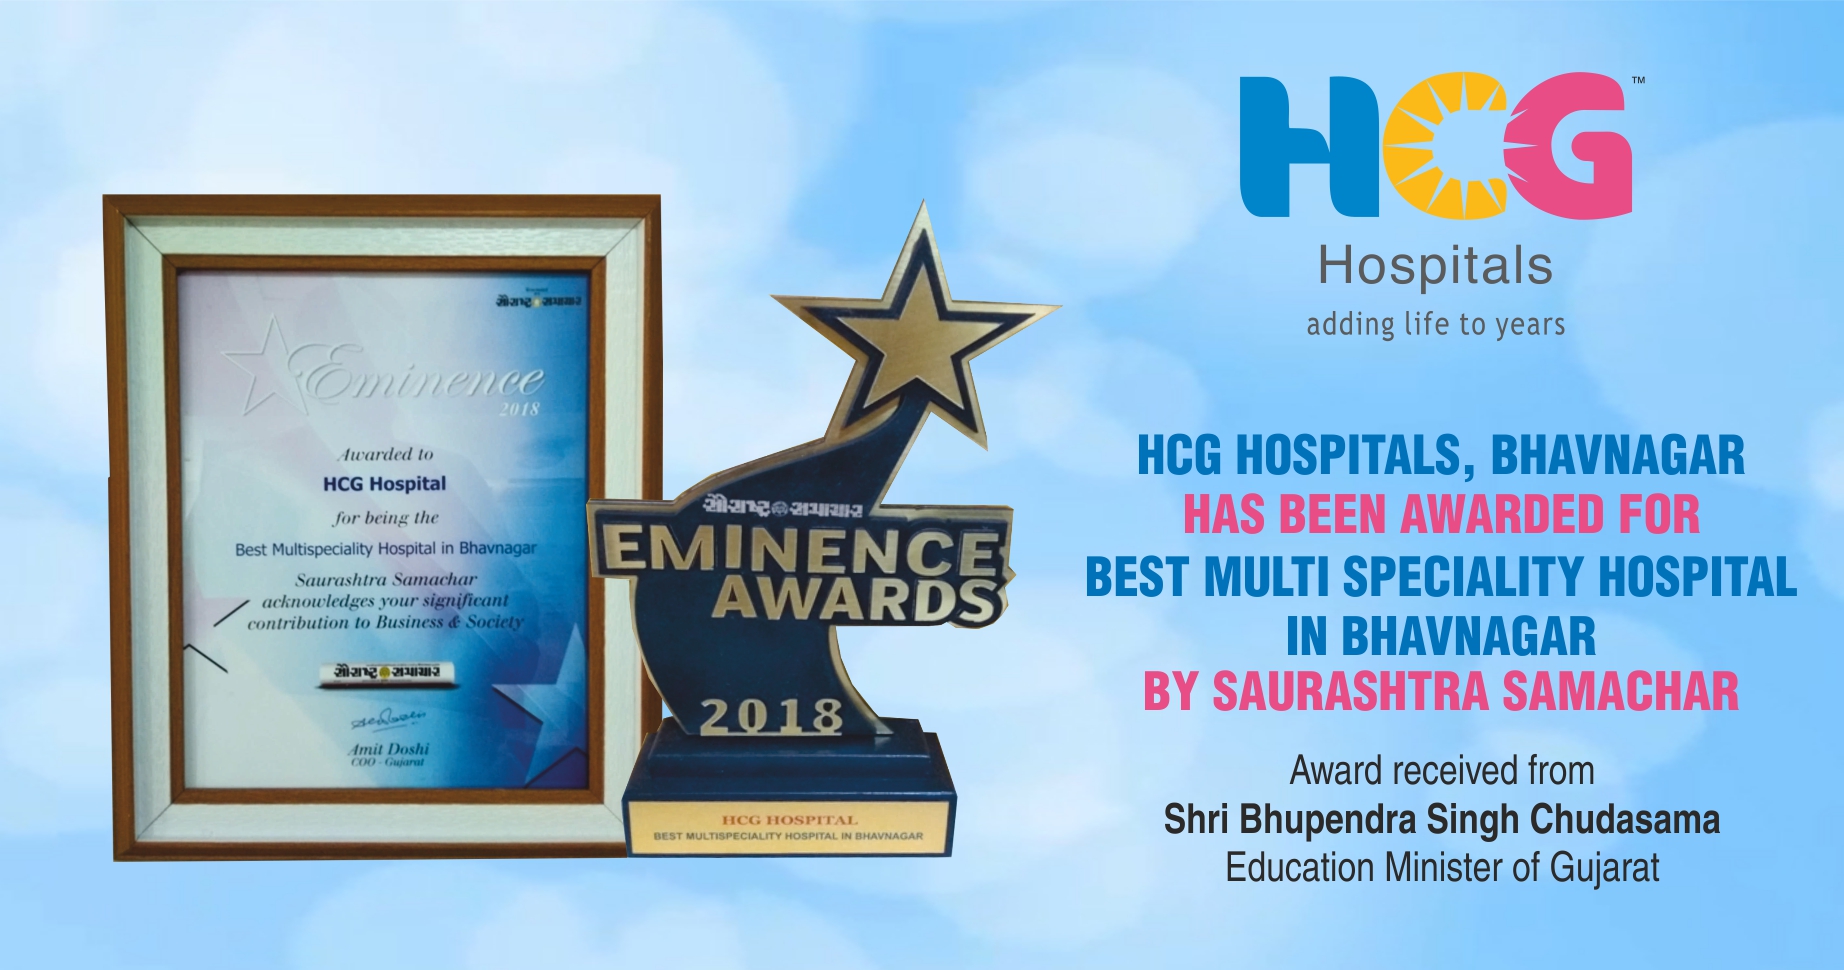 HCG Hospitals Bhavnagar has been awarded for Best Multi Specialty Hospital